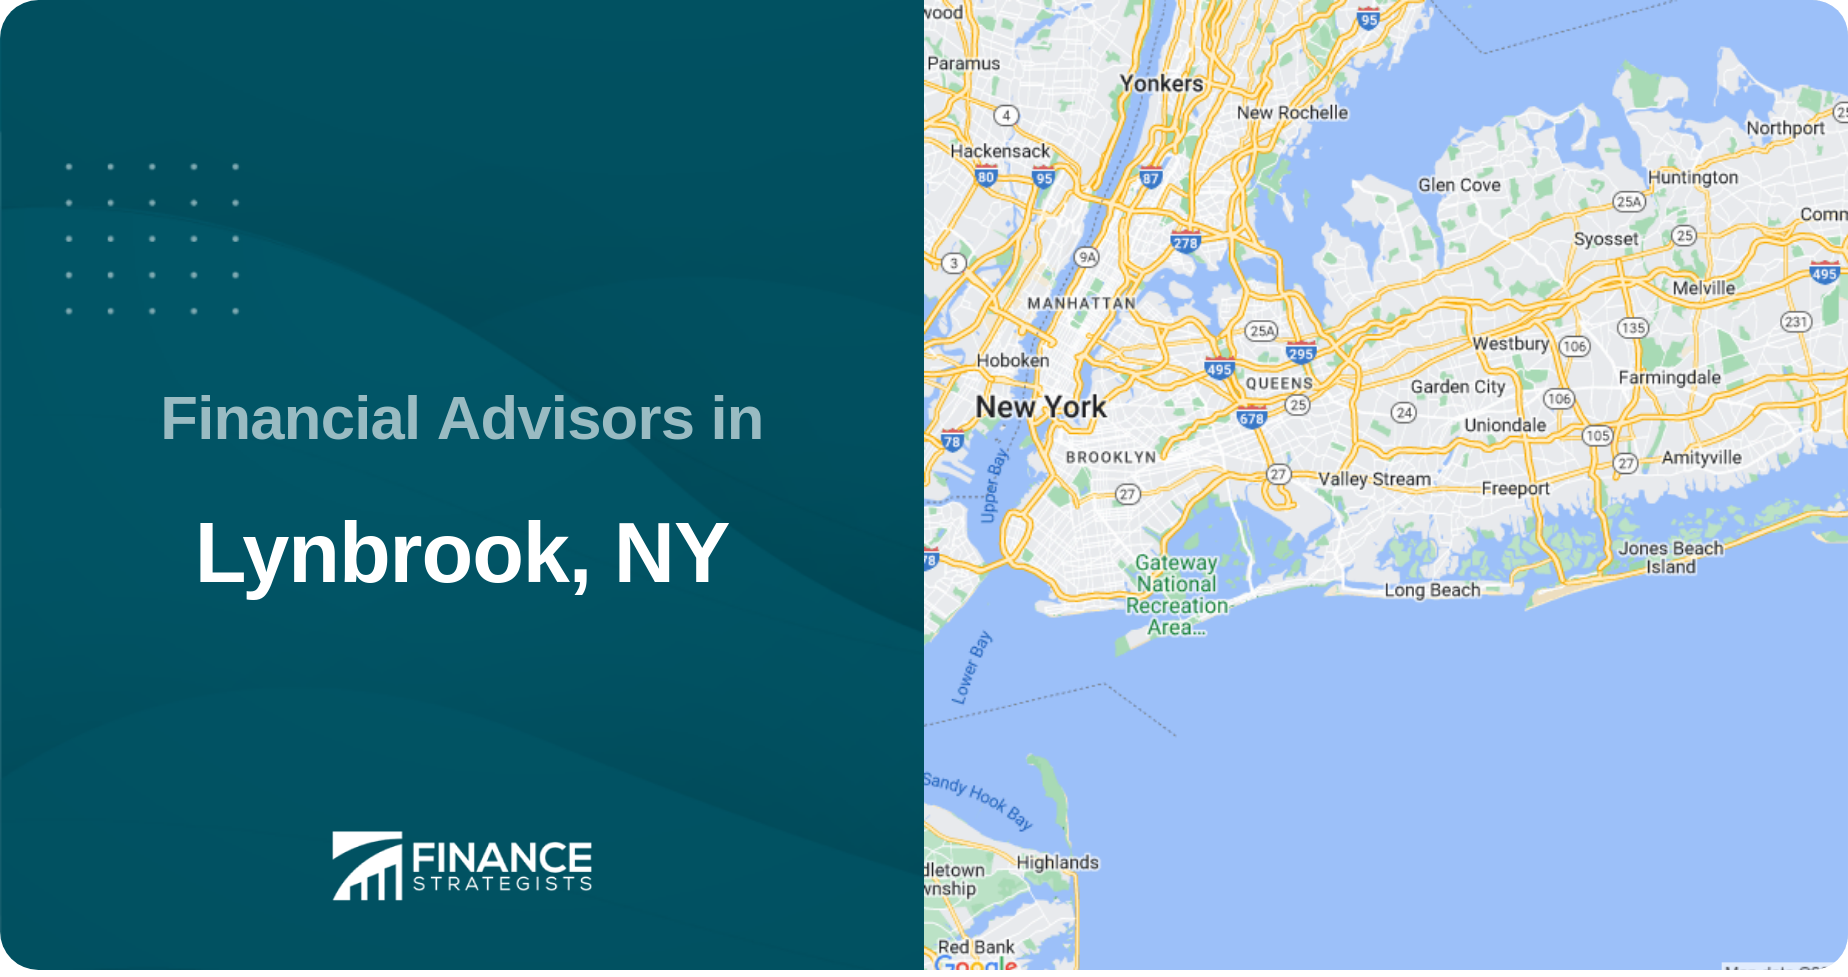 Financial Advisors in Lynbrook, NY